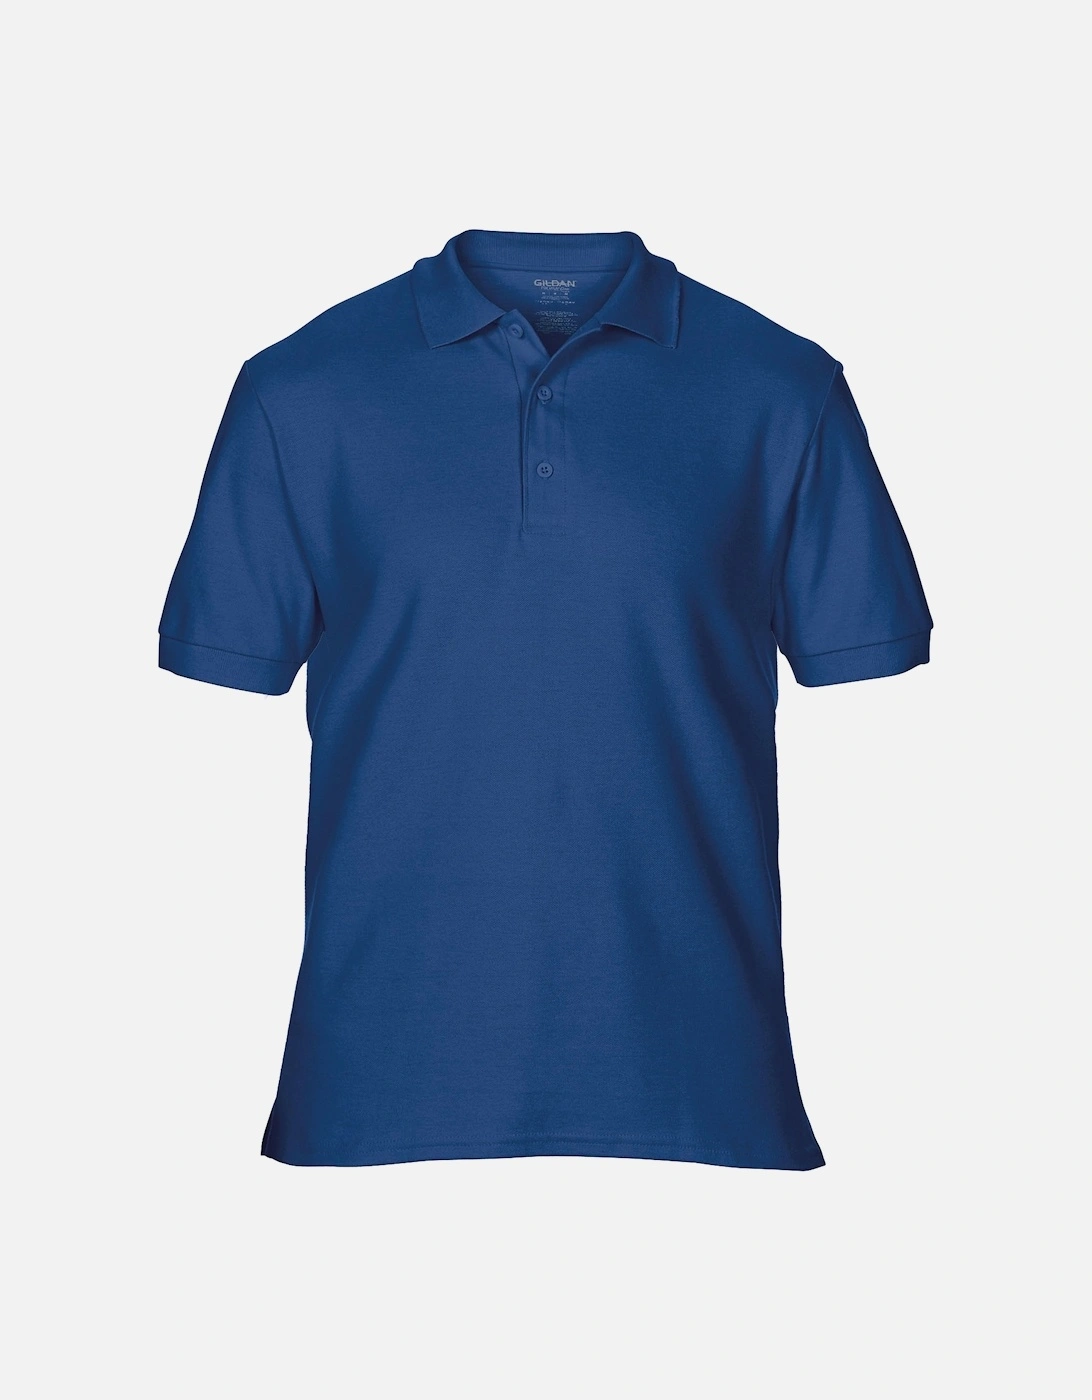 Mens Premium Cotton Sport Double Pique Polo Shirt, 3 of 2